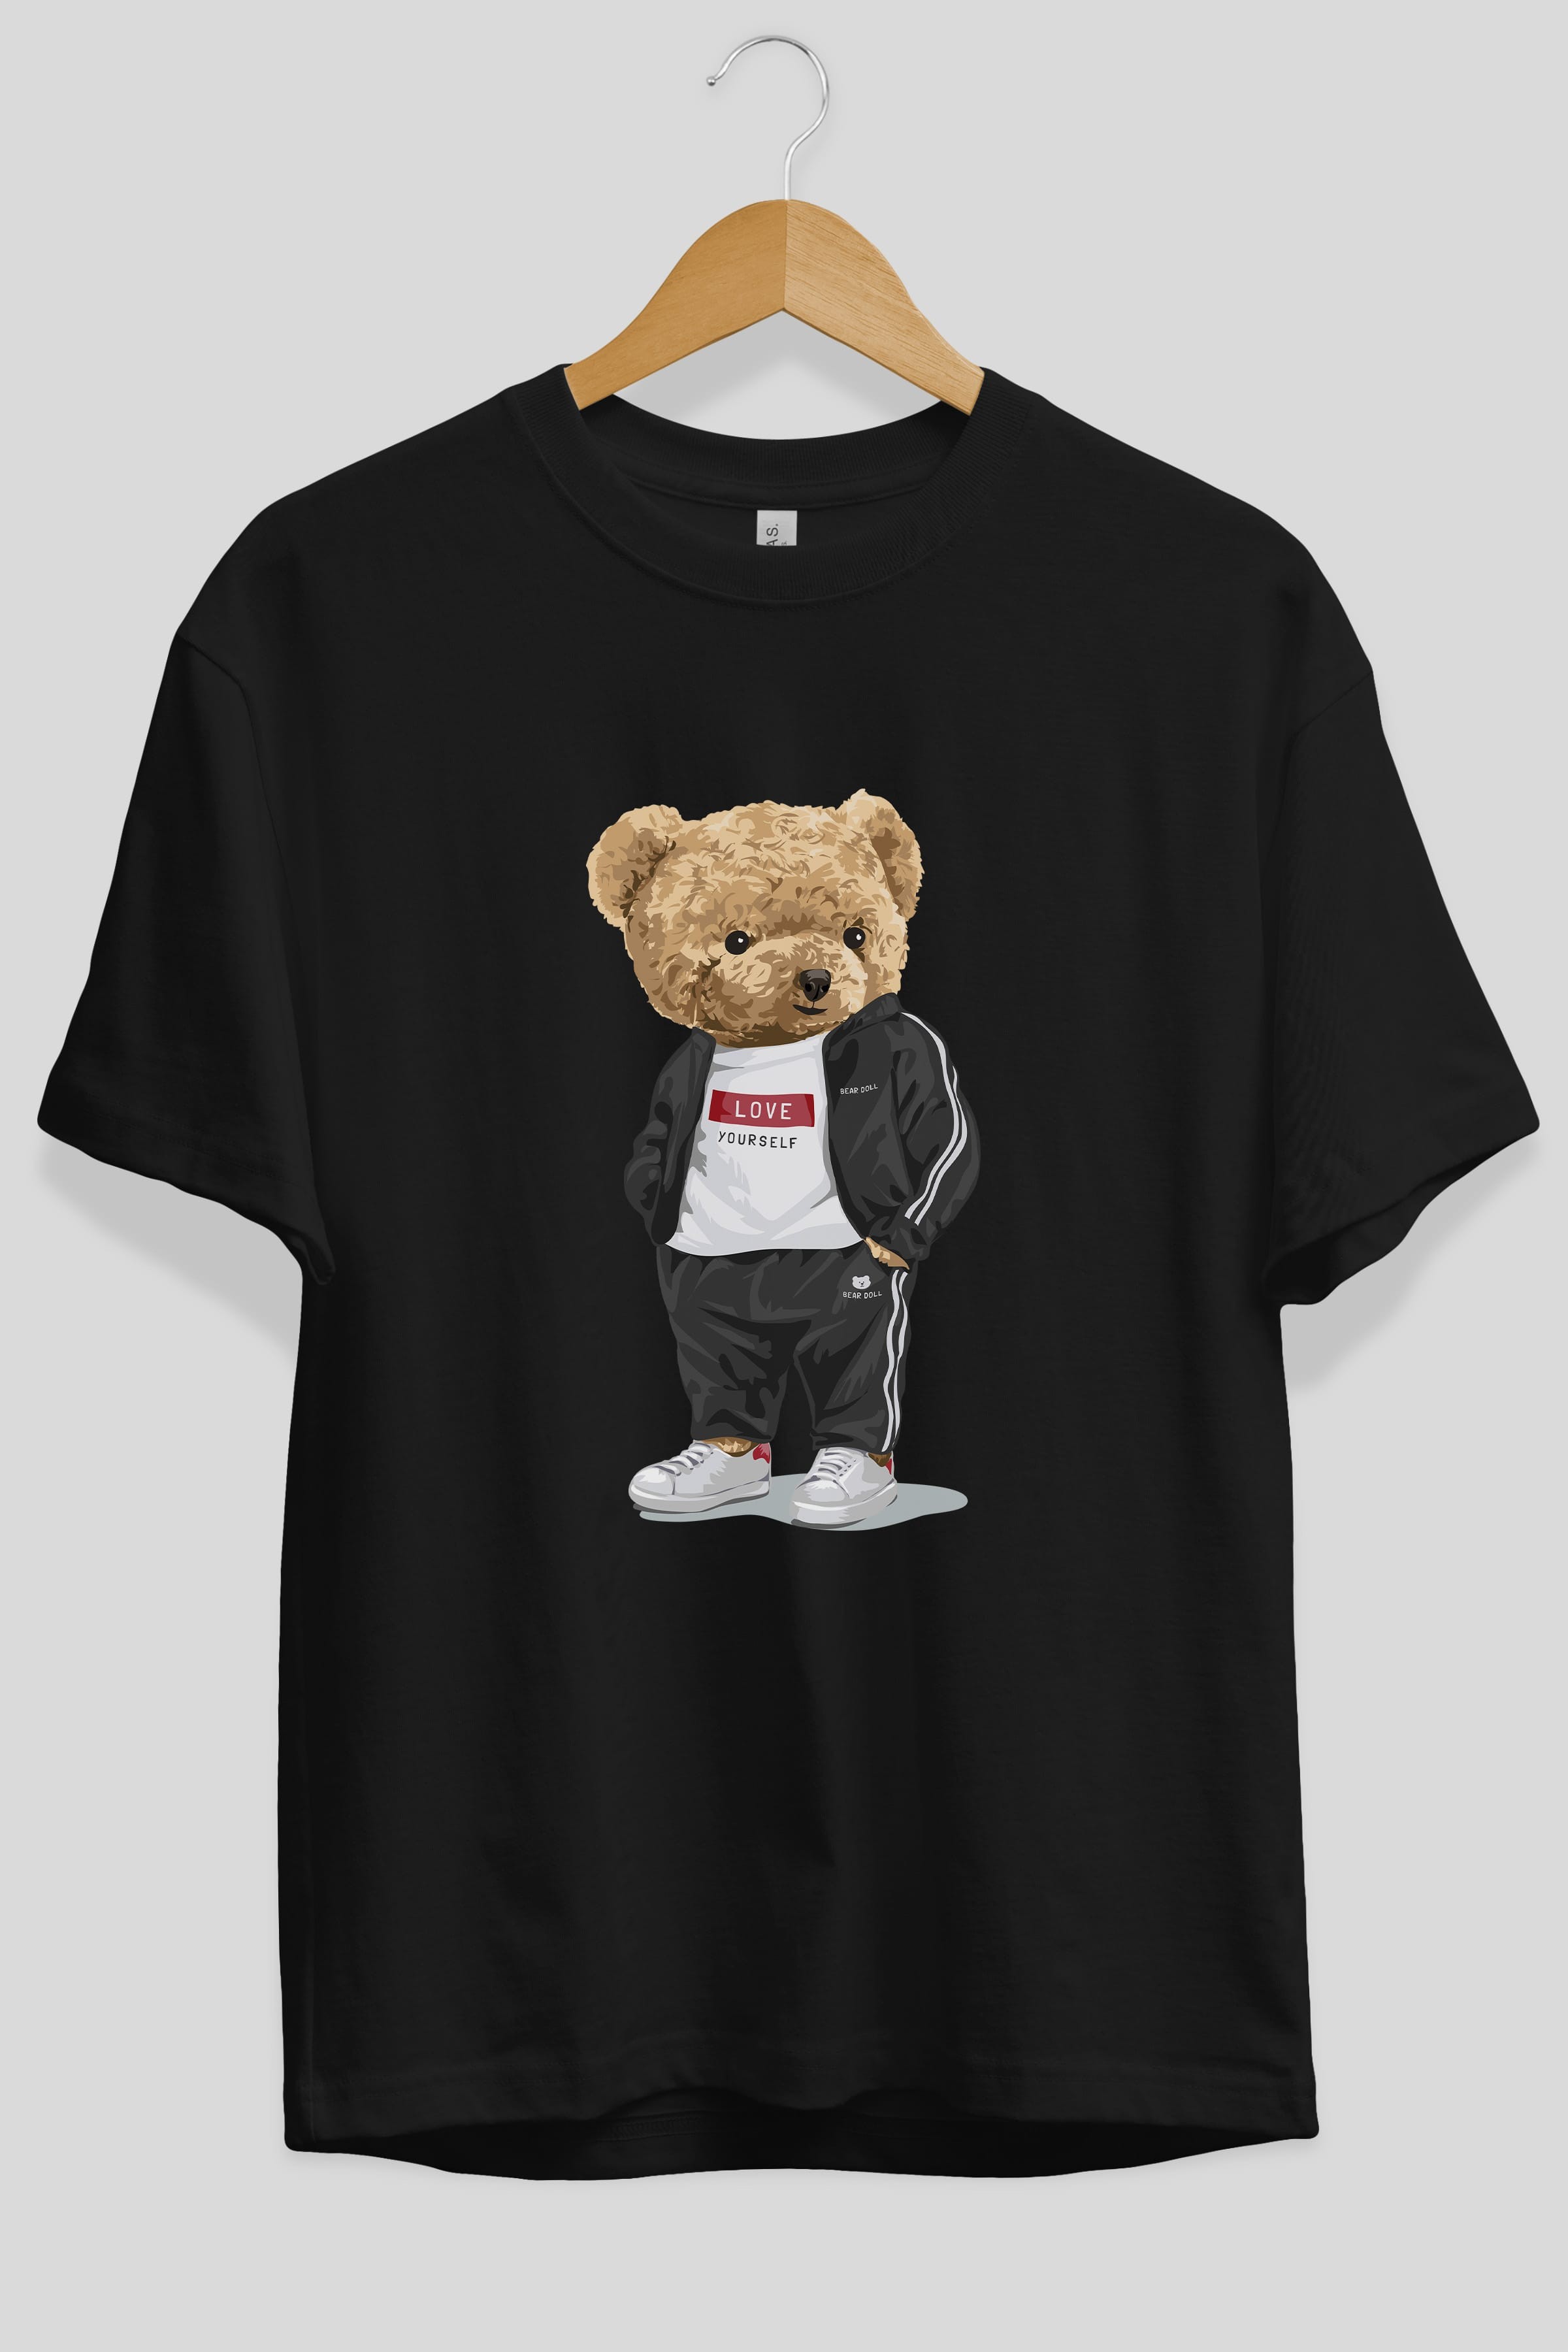 Teddy Bear Love Yourself Ön Baskılı Oversize t-shirt Erkek Kadın Unisex %100 Pamuk